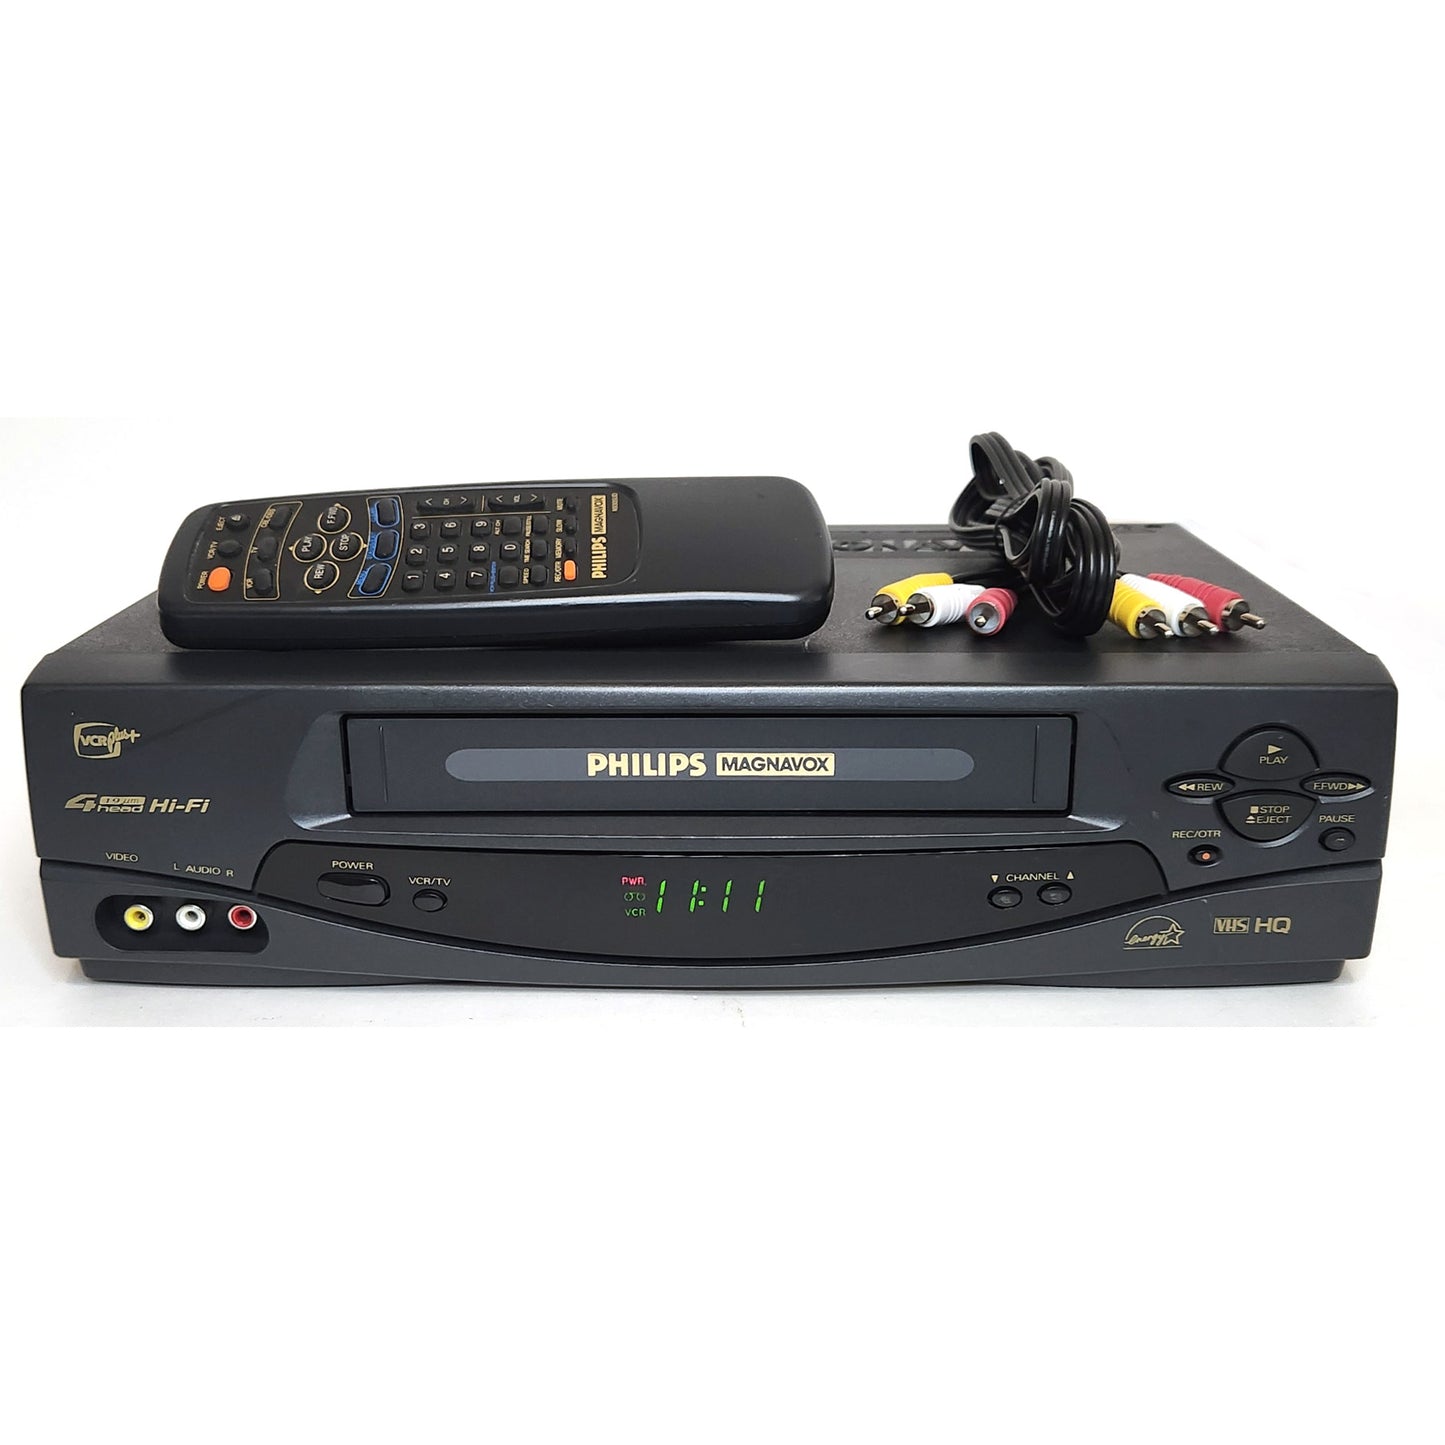 Philips Magnavox VRA631AT VCR, 4-Head Hi-Fi Stereo